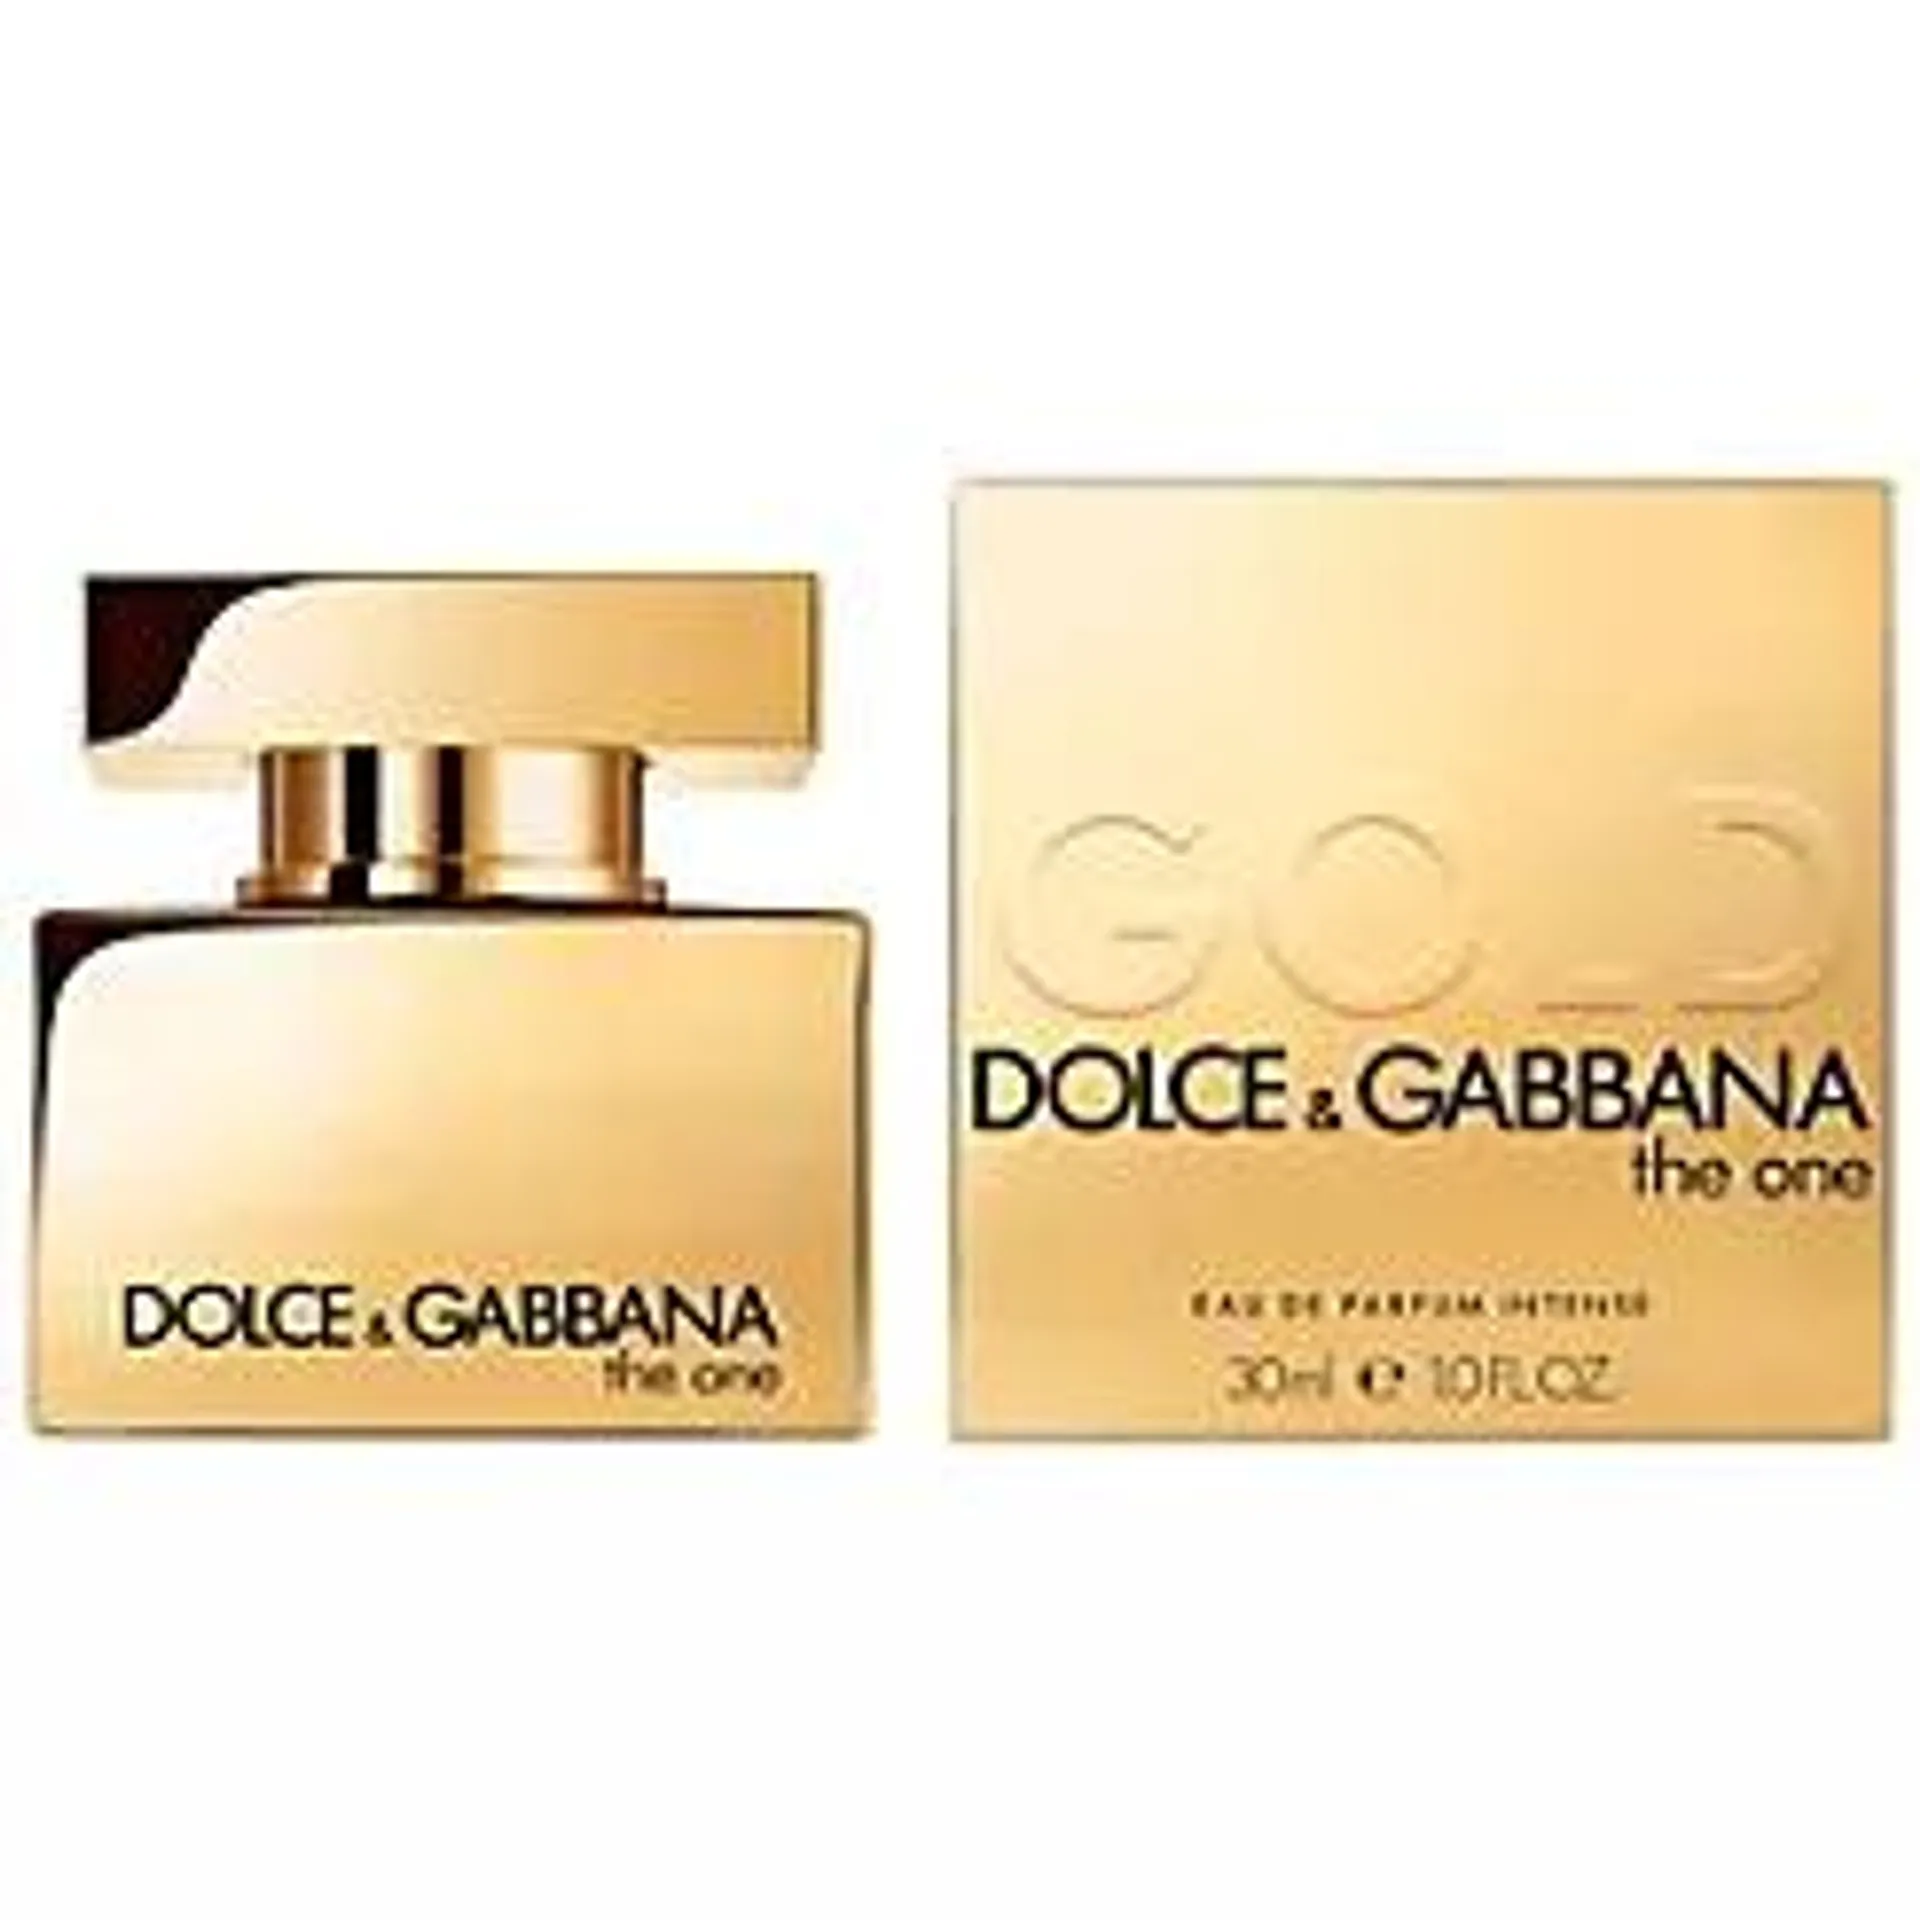 Dolce & Gabbana The One Gold Eau de Parfum Intense